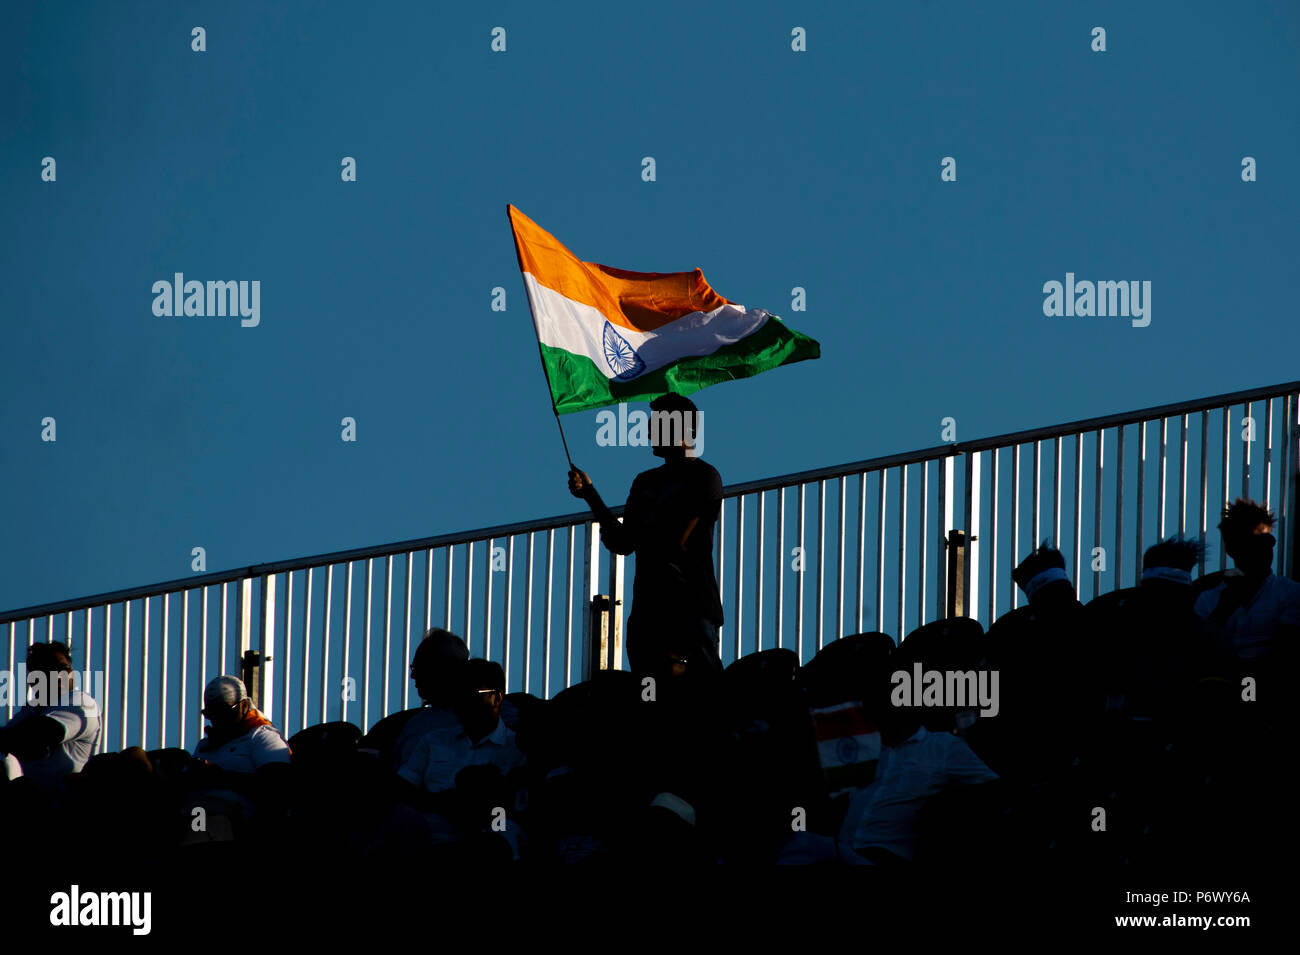 Manchester, UK. 3e juillet 2018. Un Indien dans le ventilateur crows pendant le 1er International T20 match entre l'Angleterre et l'Inde à Old Trafford, Manchester, Angleterre le 3 juillet 2018. Photo par Brandon Griffiths. Credit : Brandon Griffiths/Alamy Live News Banque D'Images